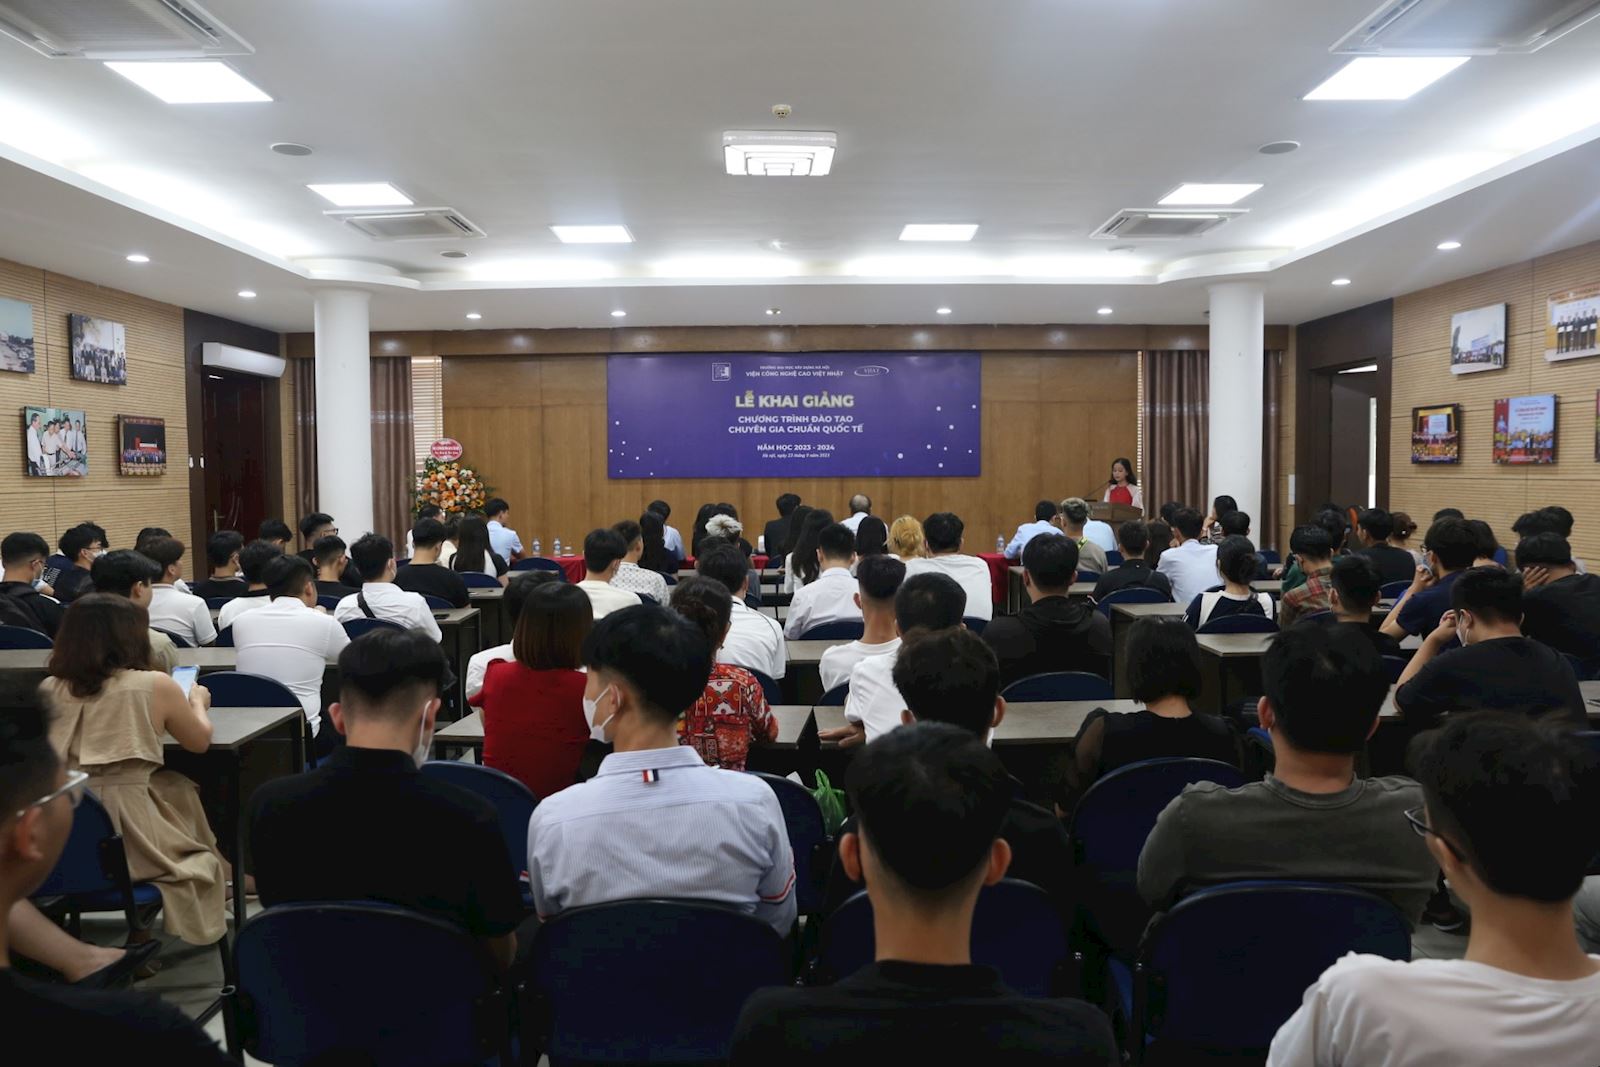 Khai giảng Khóa I chương trình đào tạo chuyên gia chuẩn quốc tế - Viện Công nghệ cao Việt Nhật